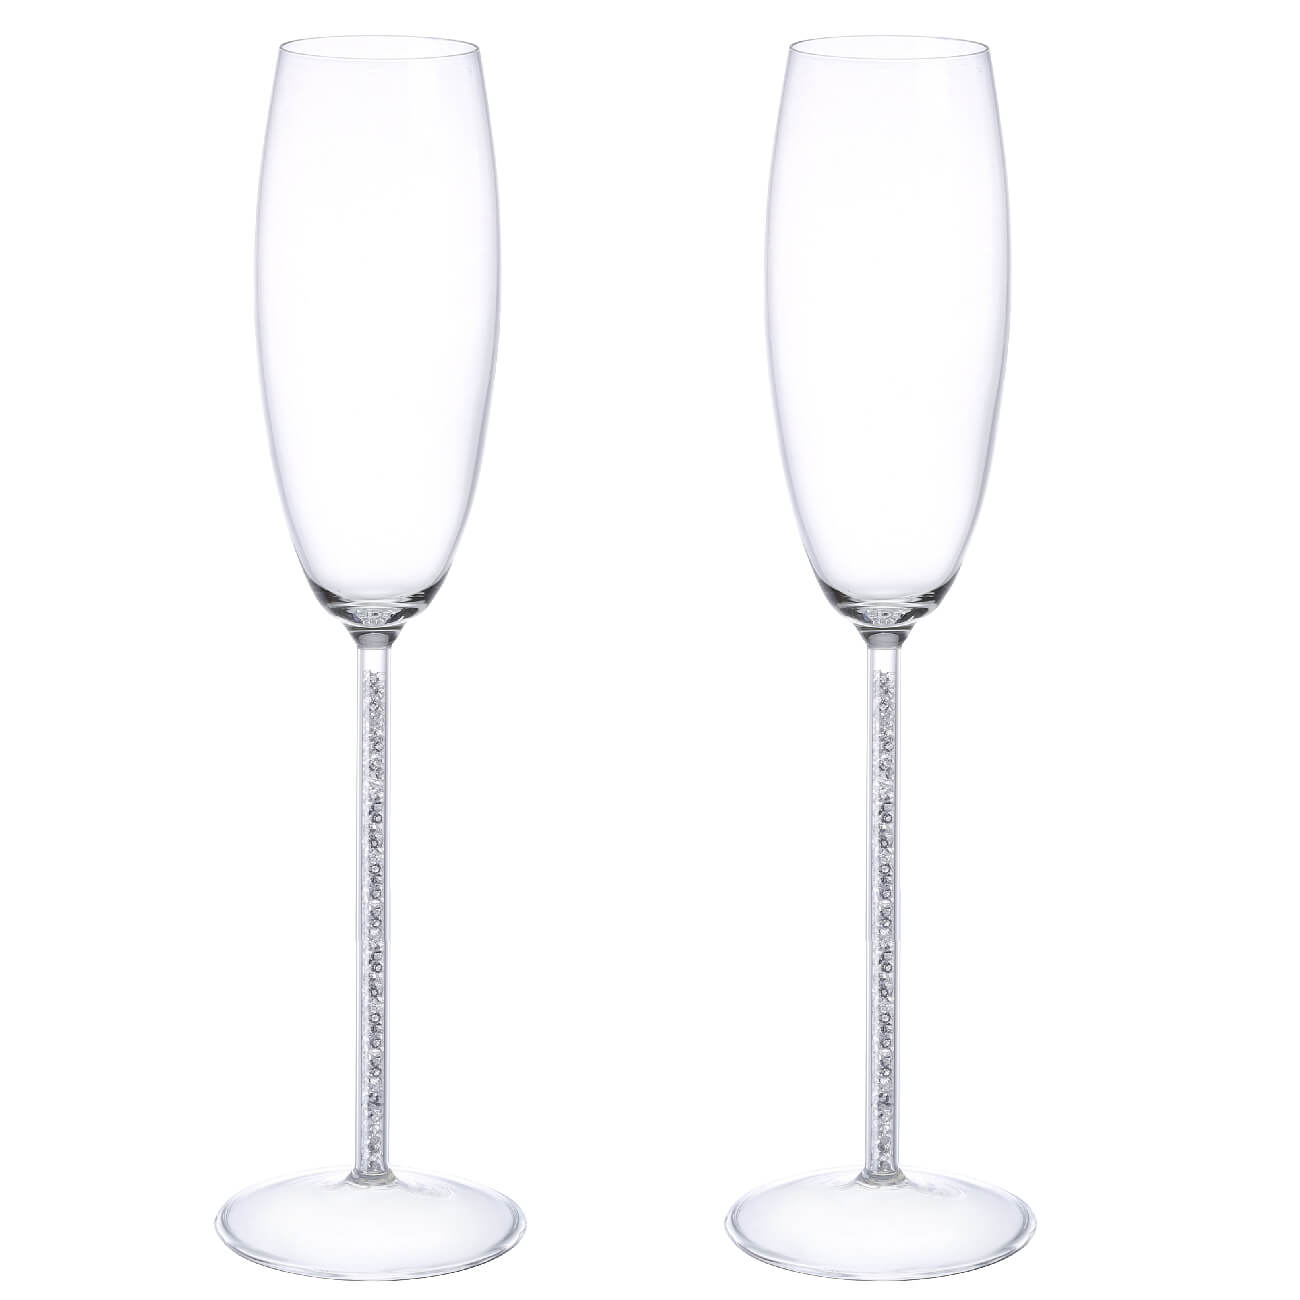 Kuchenland Бокал для шампанского, 180 мл, 2 шт, стекло/стразы, Crystal decor стразы для декора 2 мм голографический